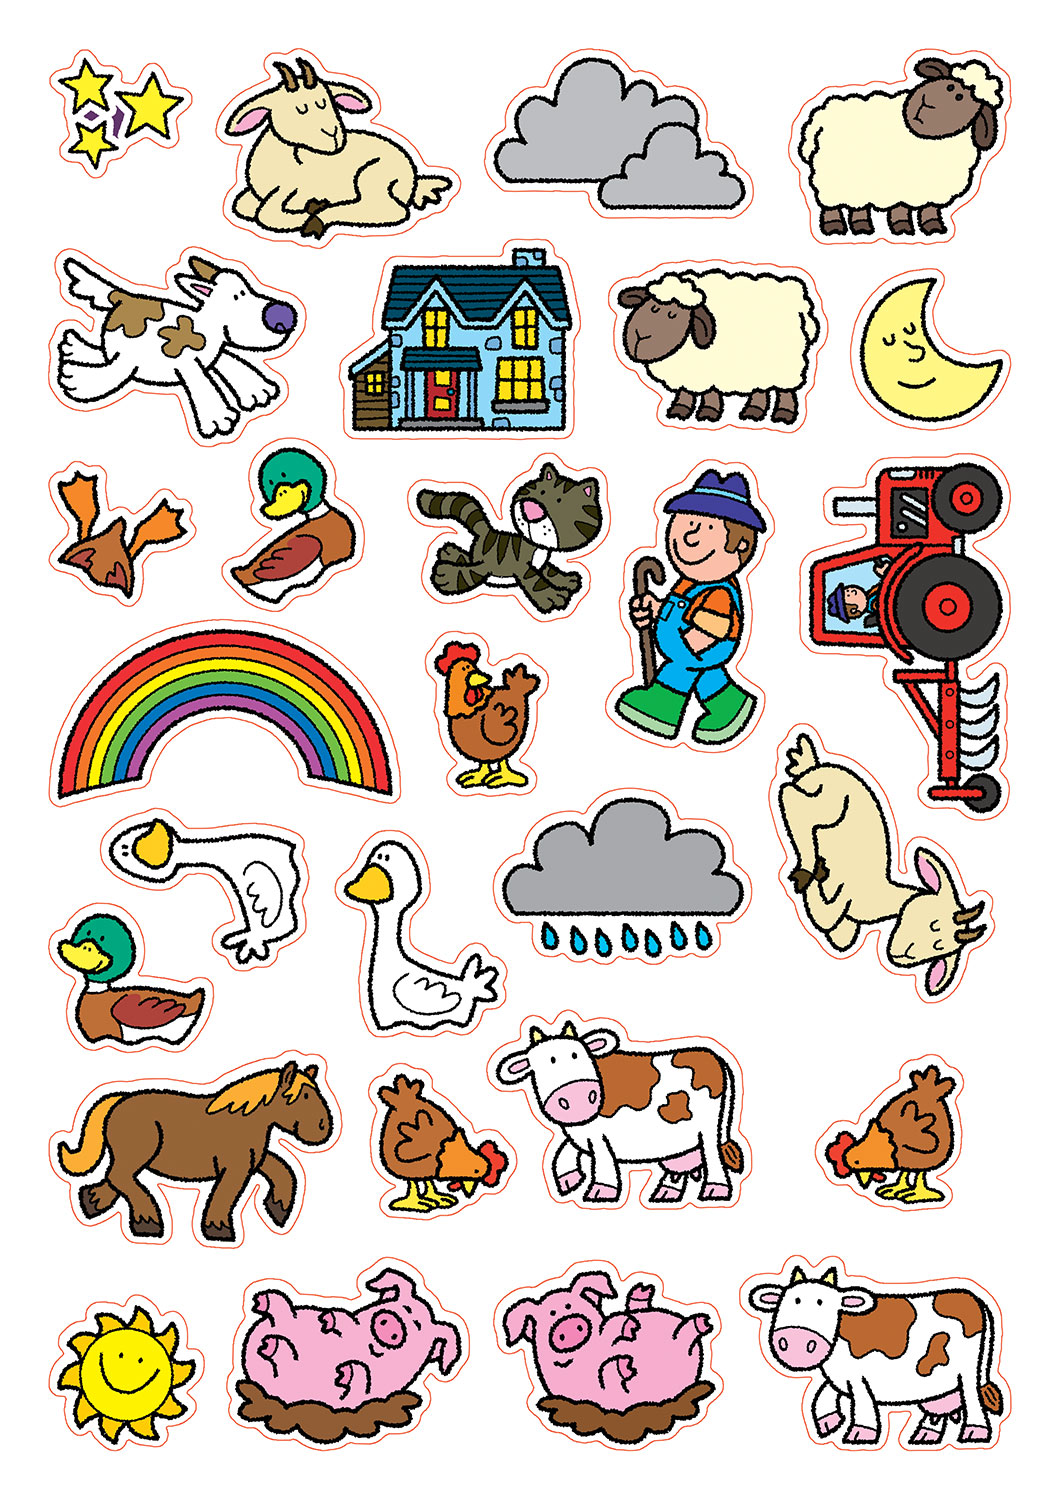 Sách tương tác sticker - Trang trại động vật – Play felt farm animals